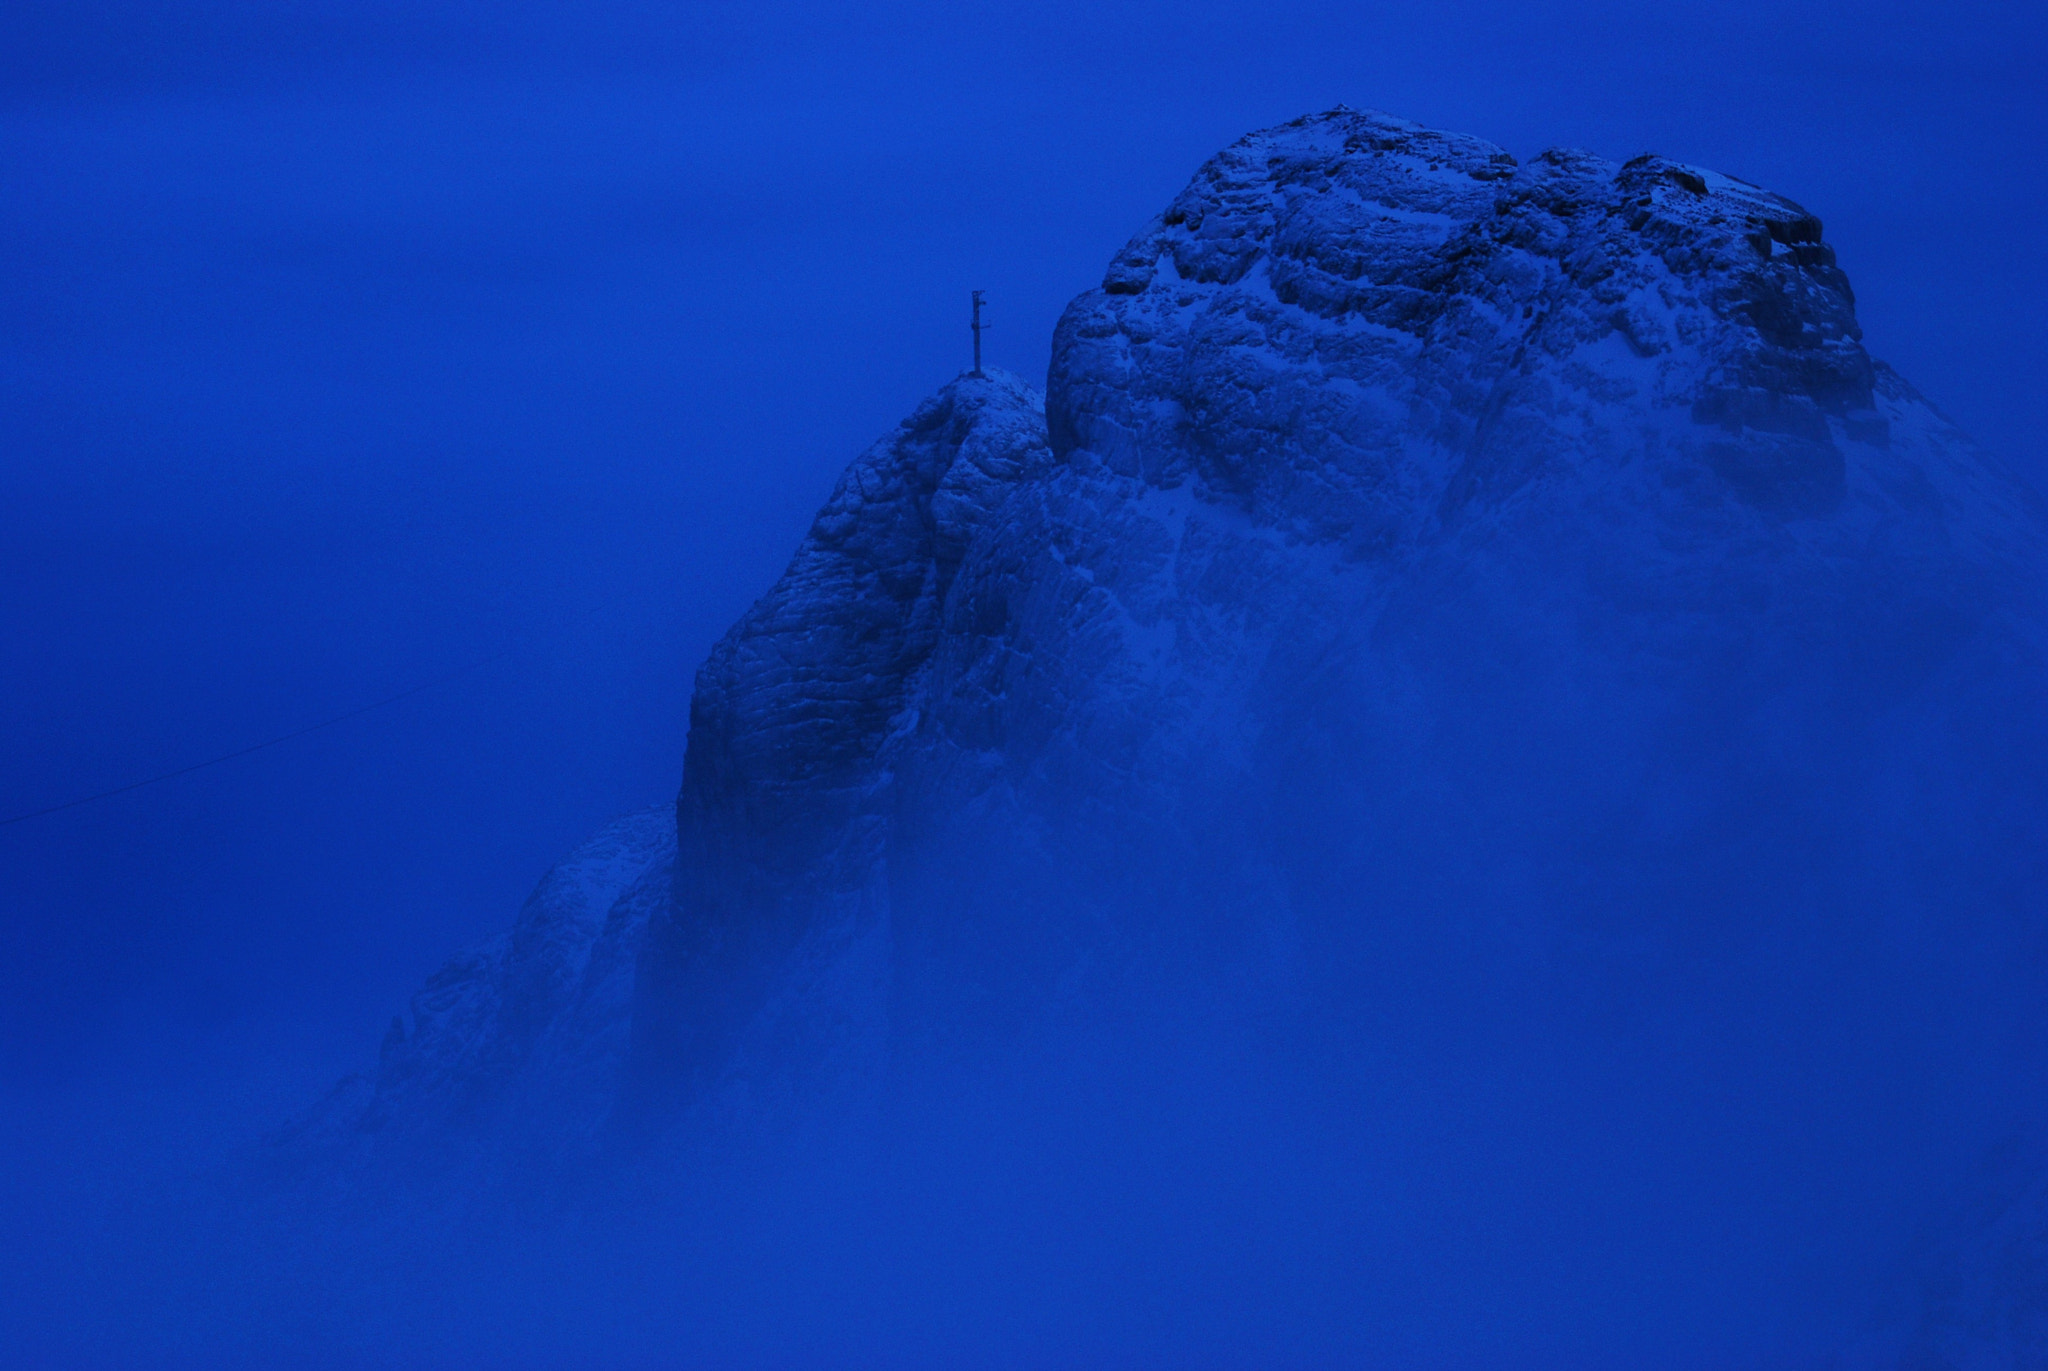 AF Zoom-Nikkor 28-200mm f/3.5-5.6D IF sample photo. Blue mist photography